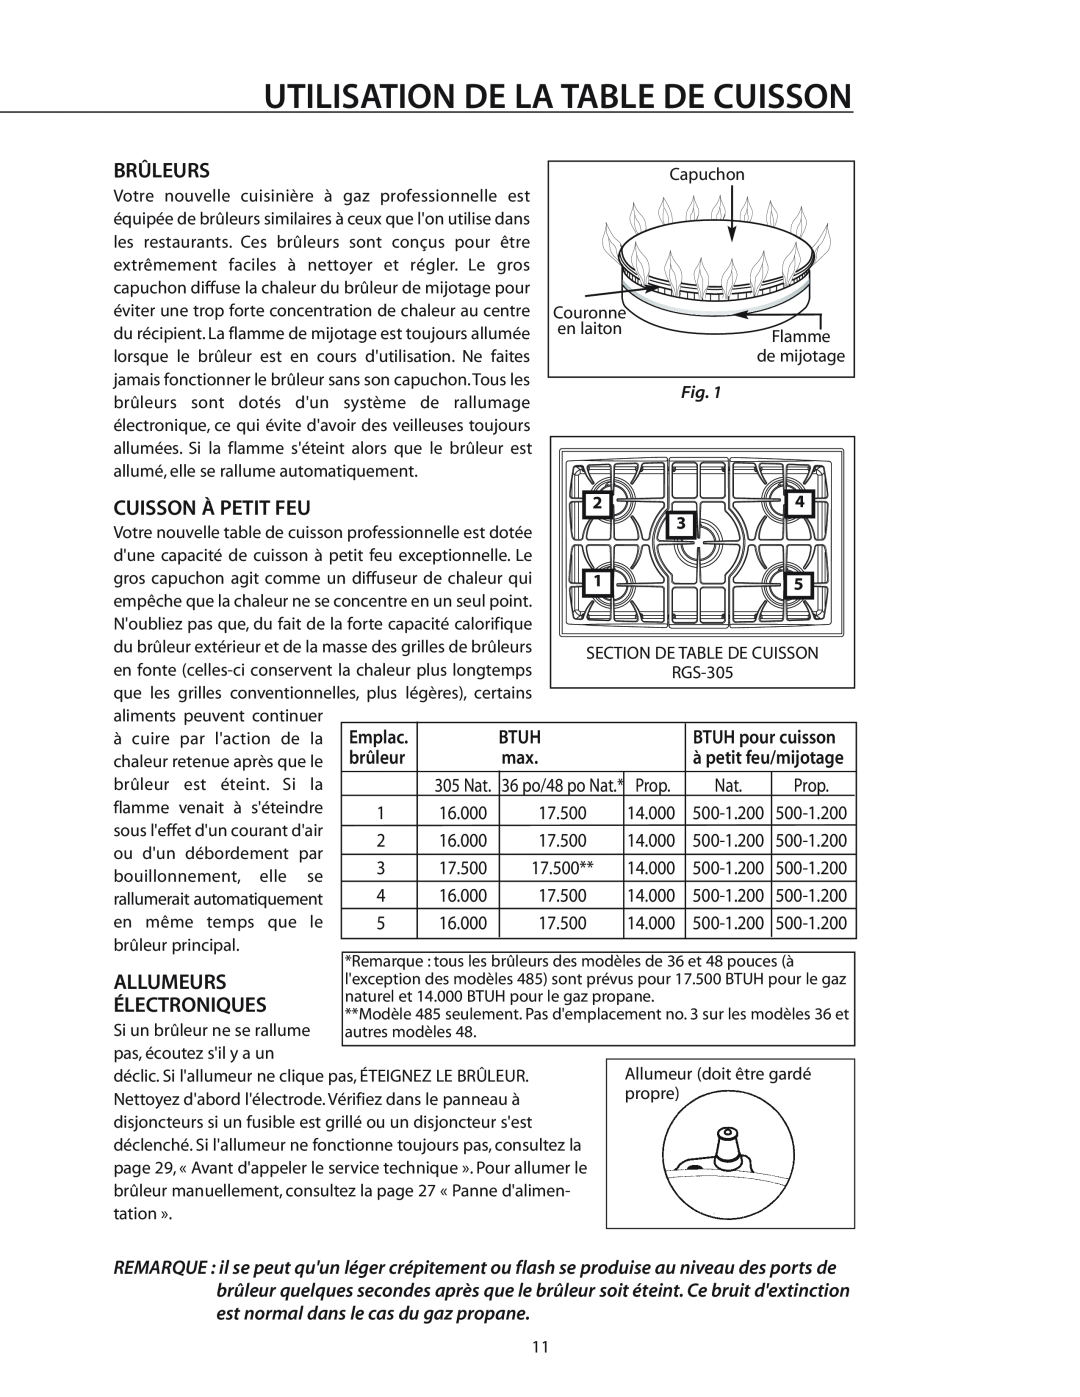 DCS RGS-486GL manual Utilisation De La Table De Cuisson, Brûleurs, Cuisson À Petit Feu, Btuh, Prop, Allumeurs Électroniques 